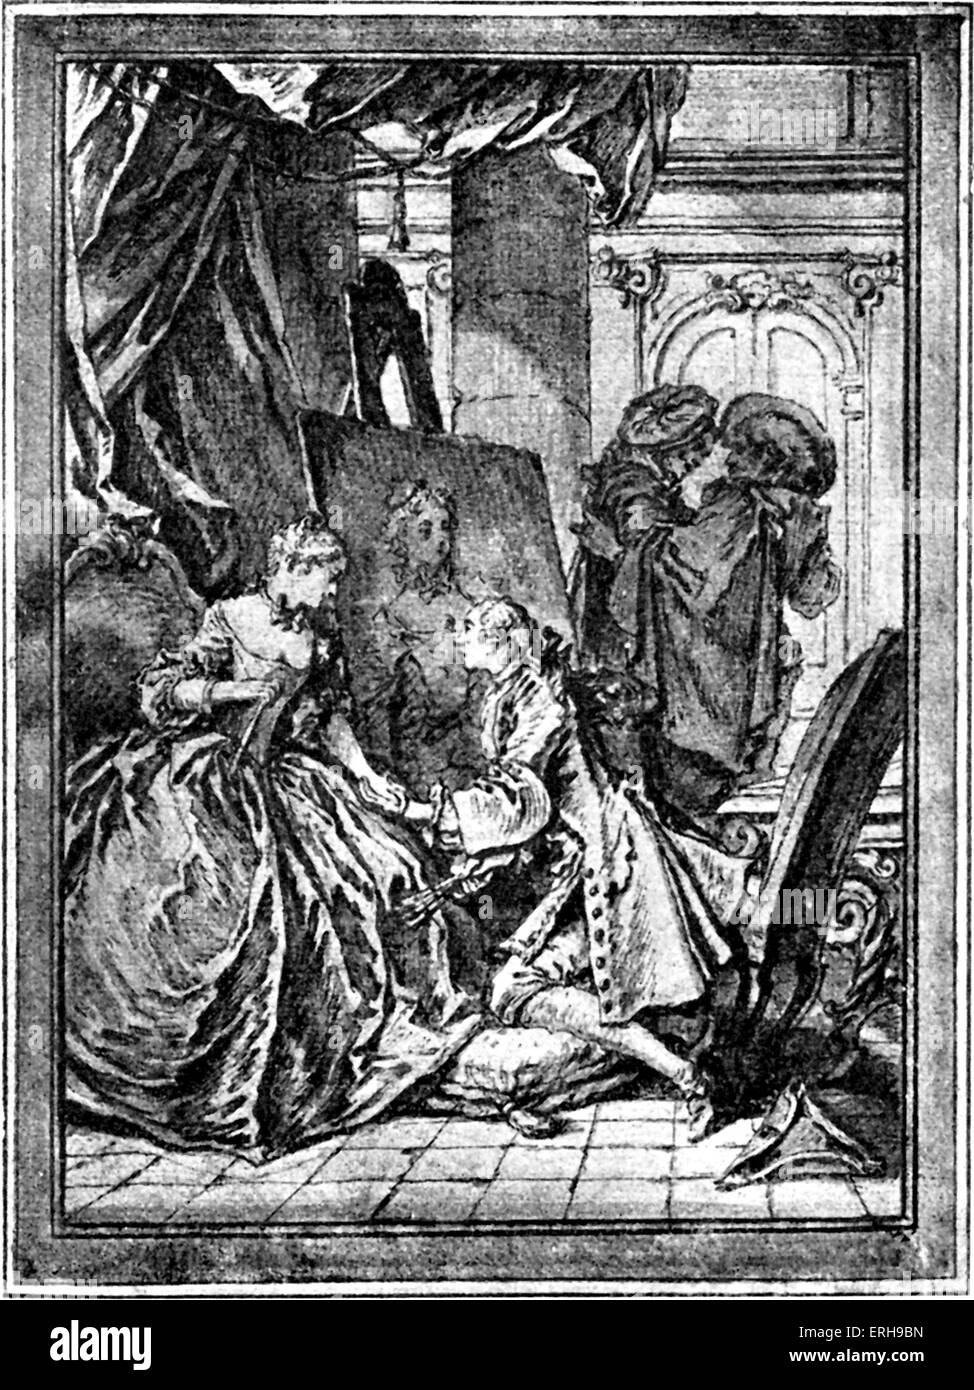 Molières Werke - Illus ment von Boucher, 1734-Ausgabe. Veröffentlicht in Paris, Frankreich. Im klassischen Stil. M: auch bekannt als Stockfoto